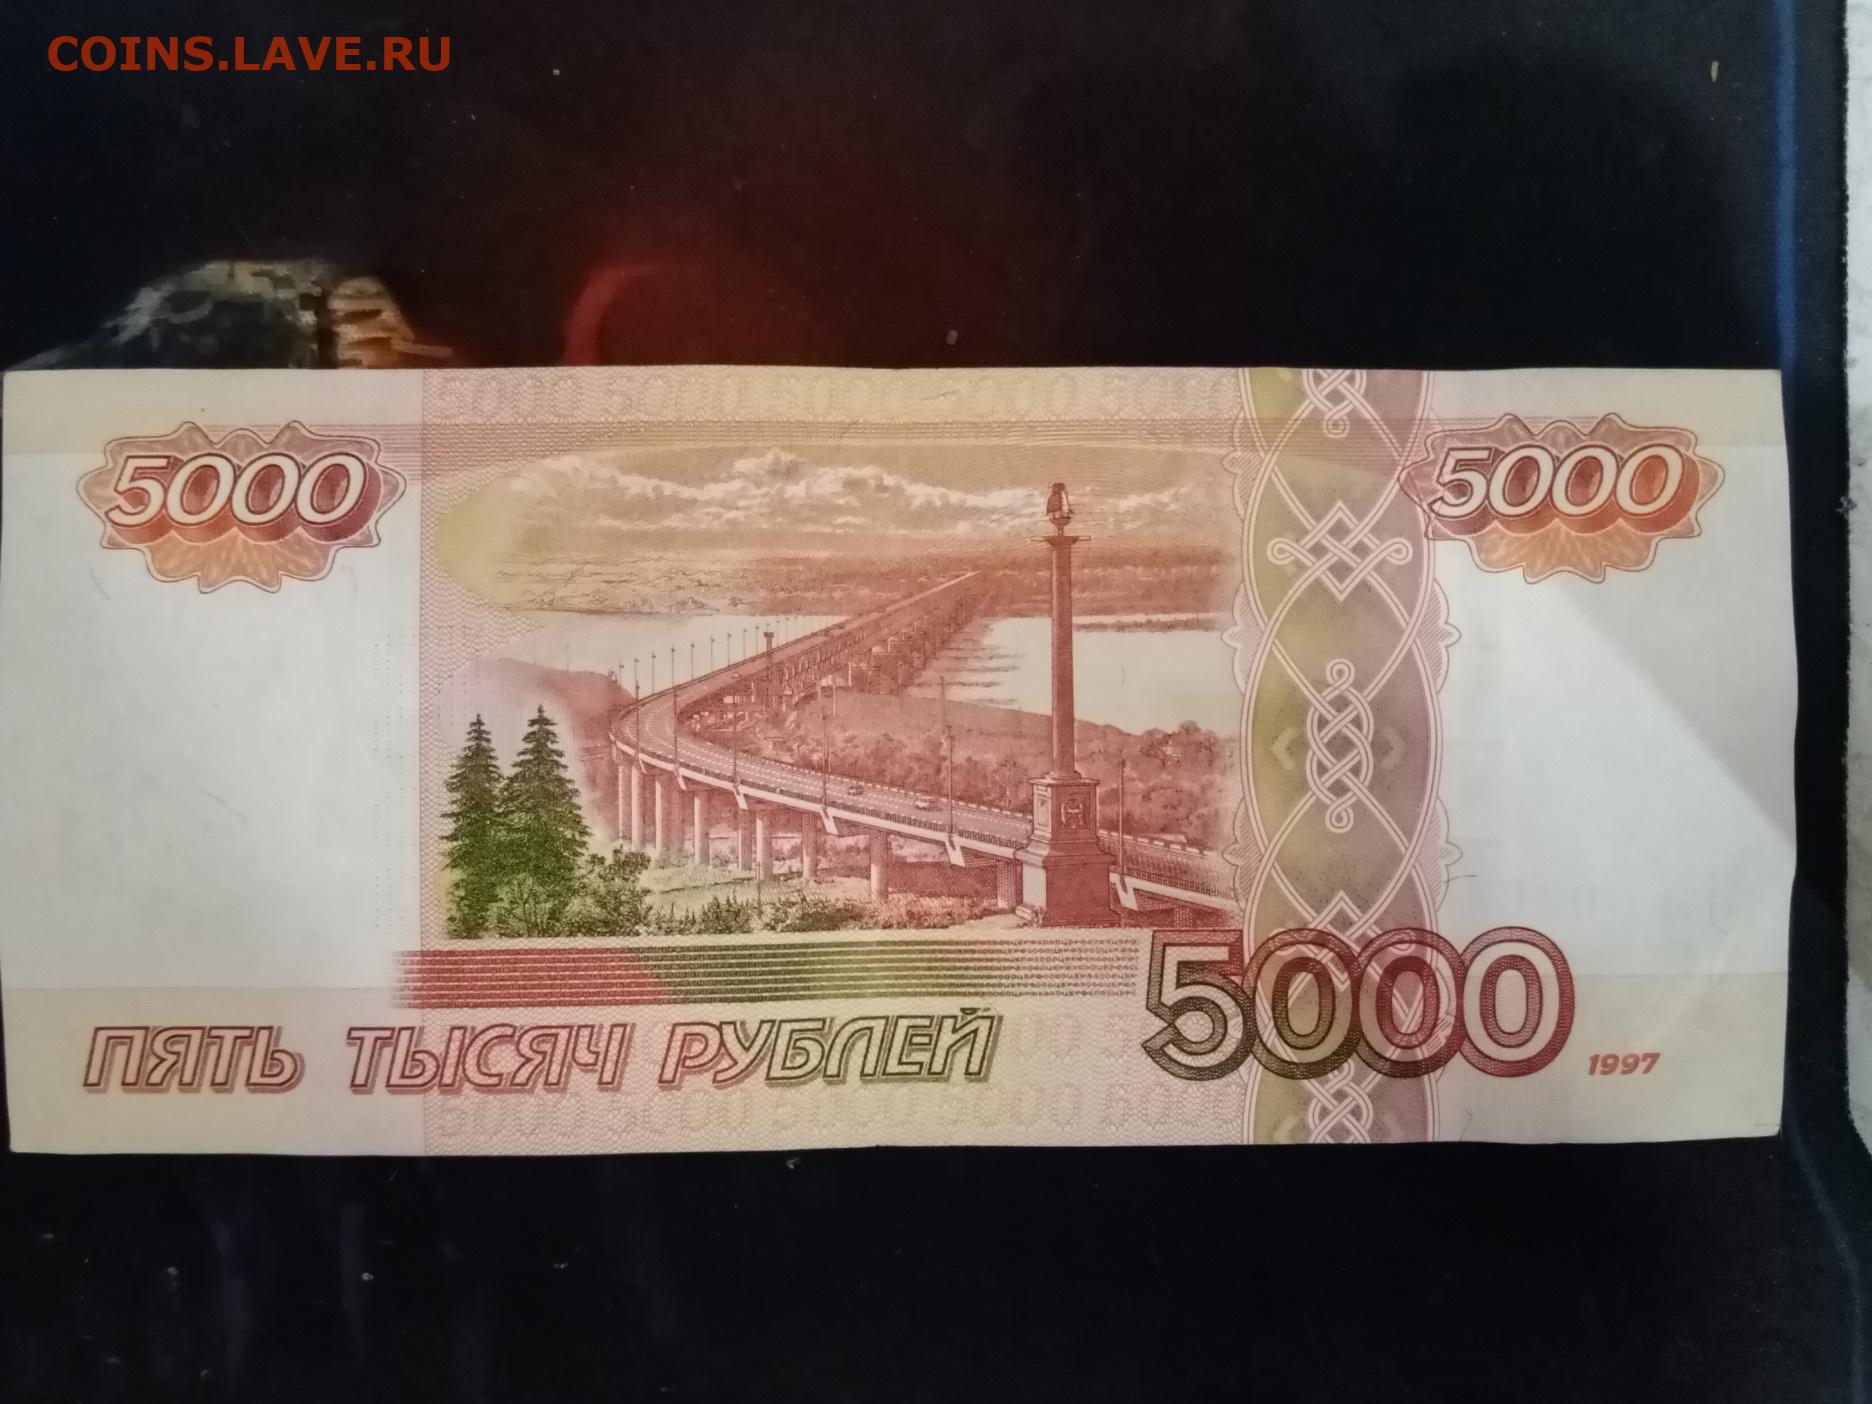 5000 рубль в сумах сегодня. Купюра 5000 1997 года. Купюра 5000 рублей 1997 года. 5000 Рублей 2006 года модификации. Оборотная сторона 5000 купюры.